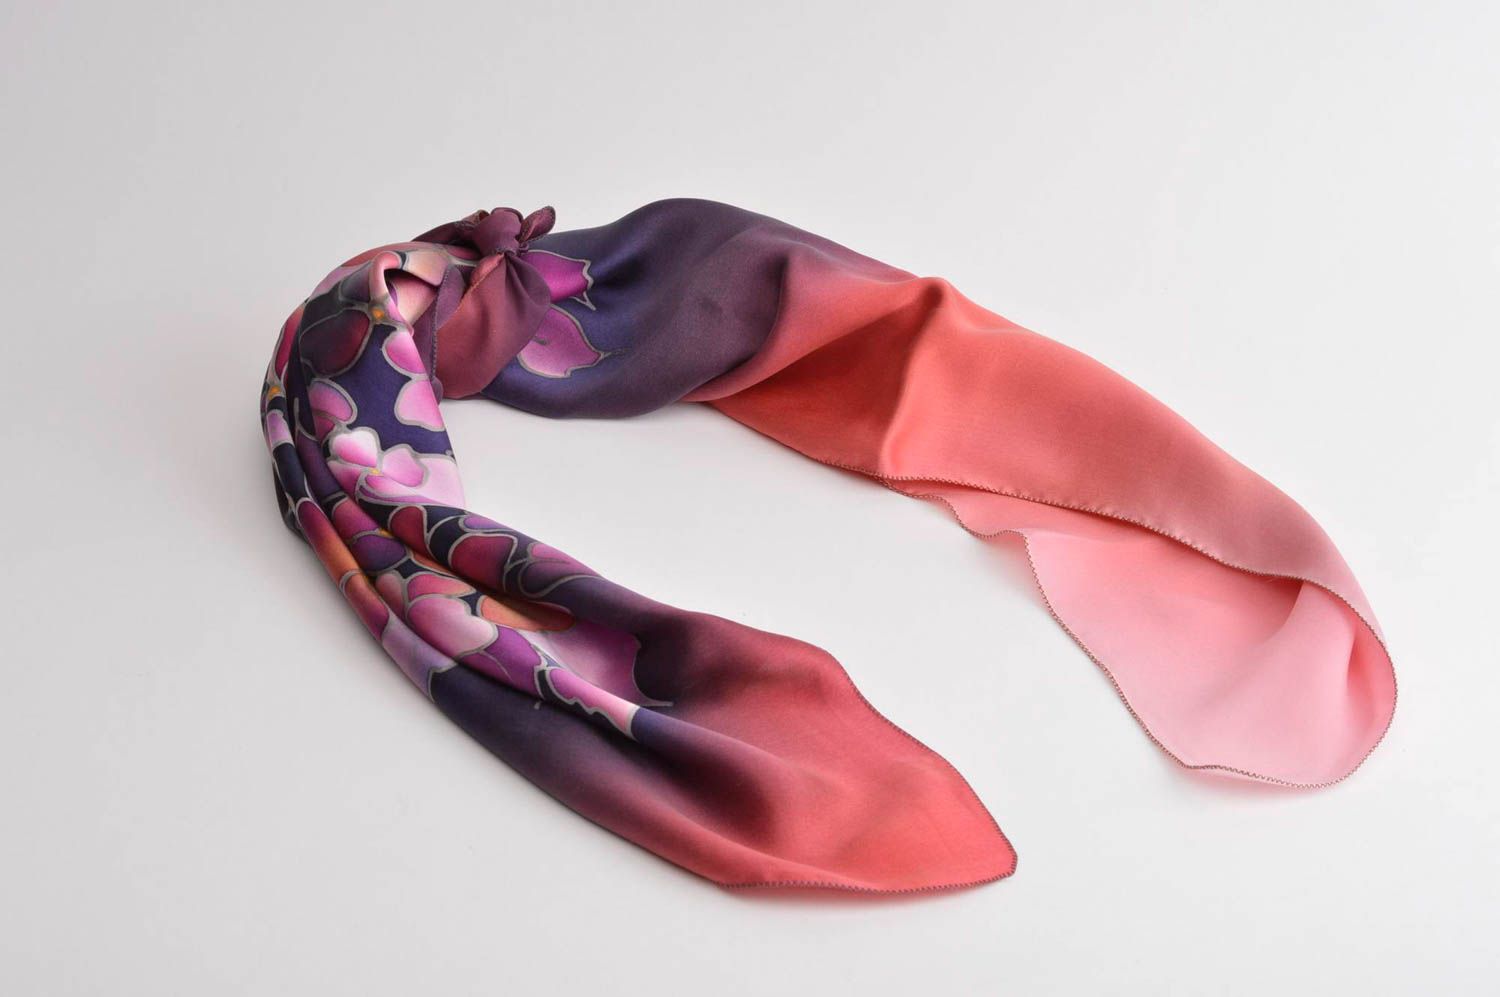 Красочный платок ручной работы платок из шелка оригинальный платок с цветочками фото 4